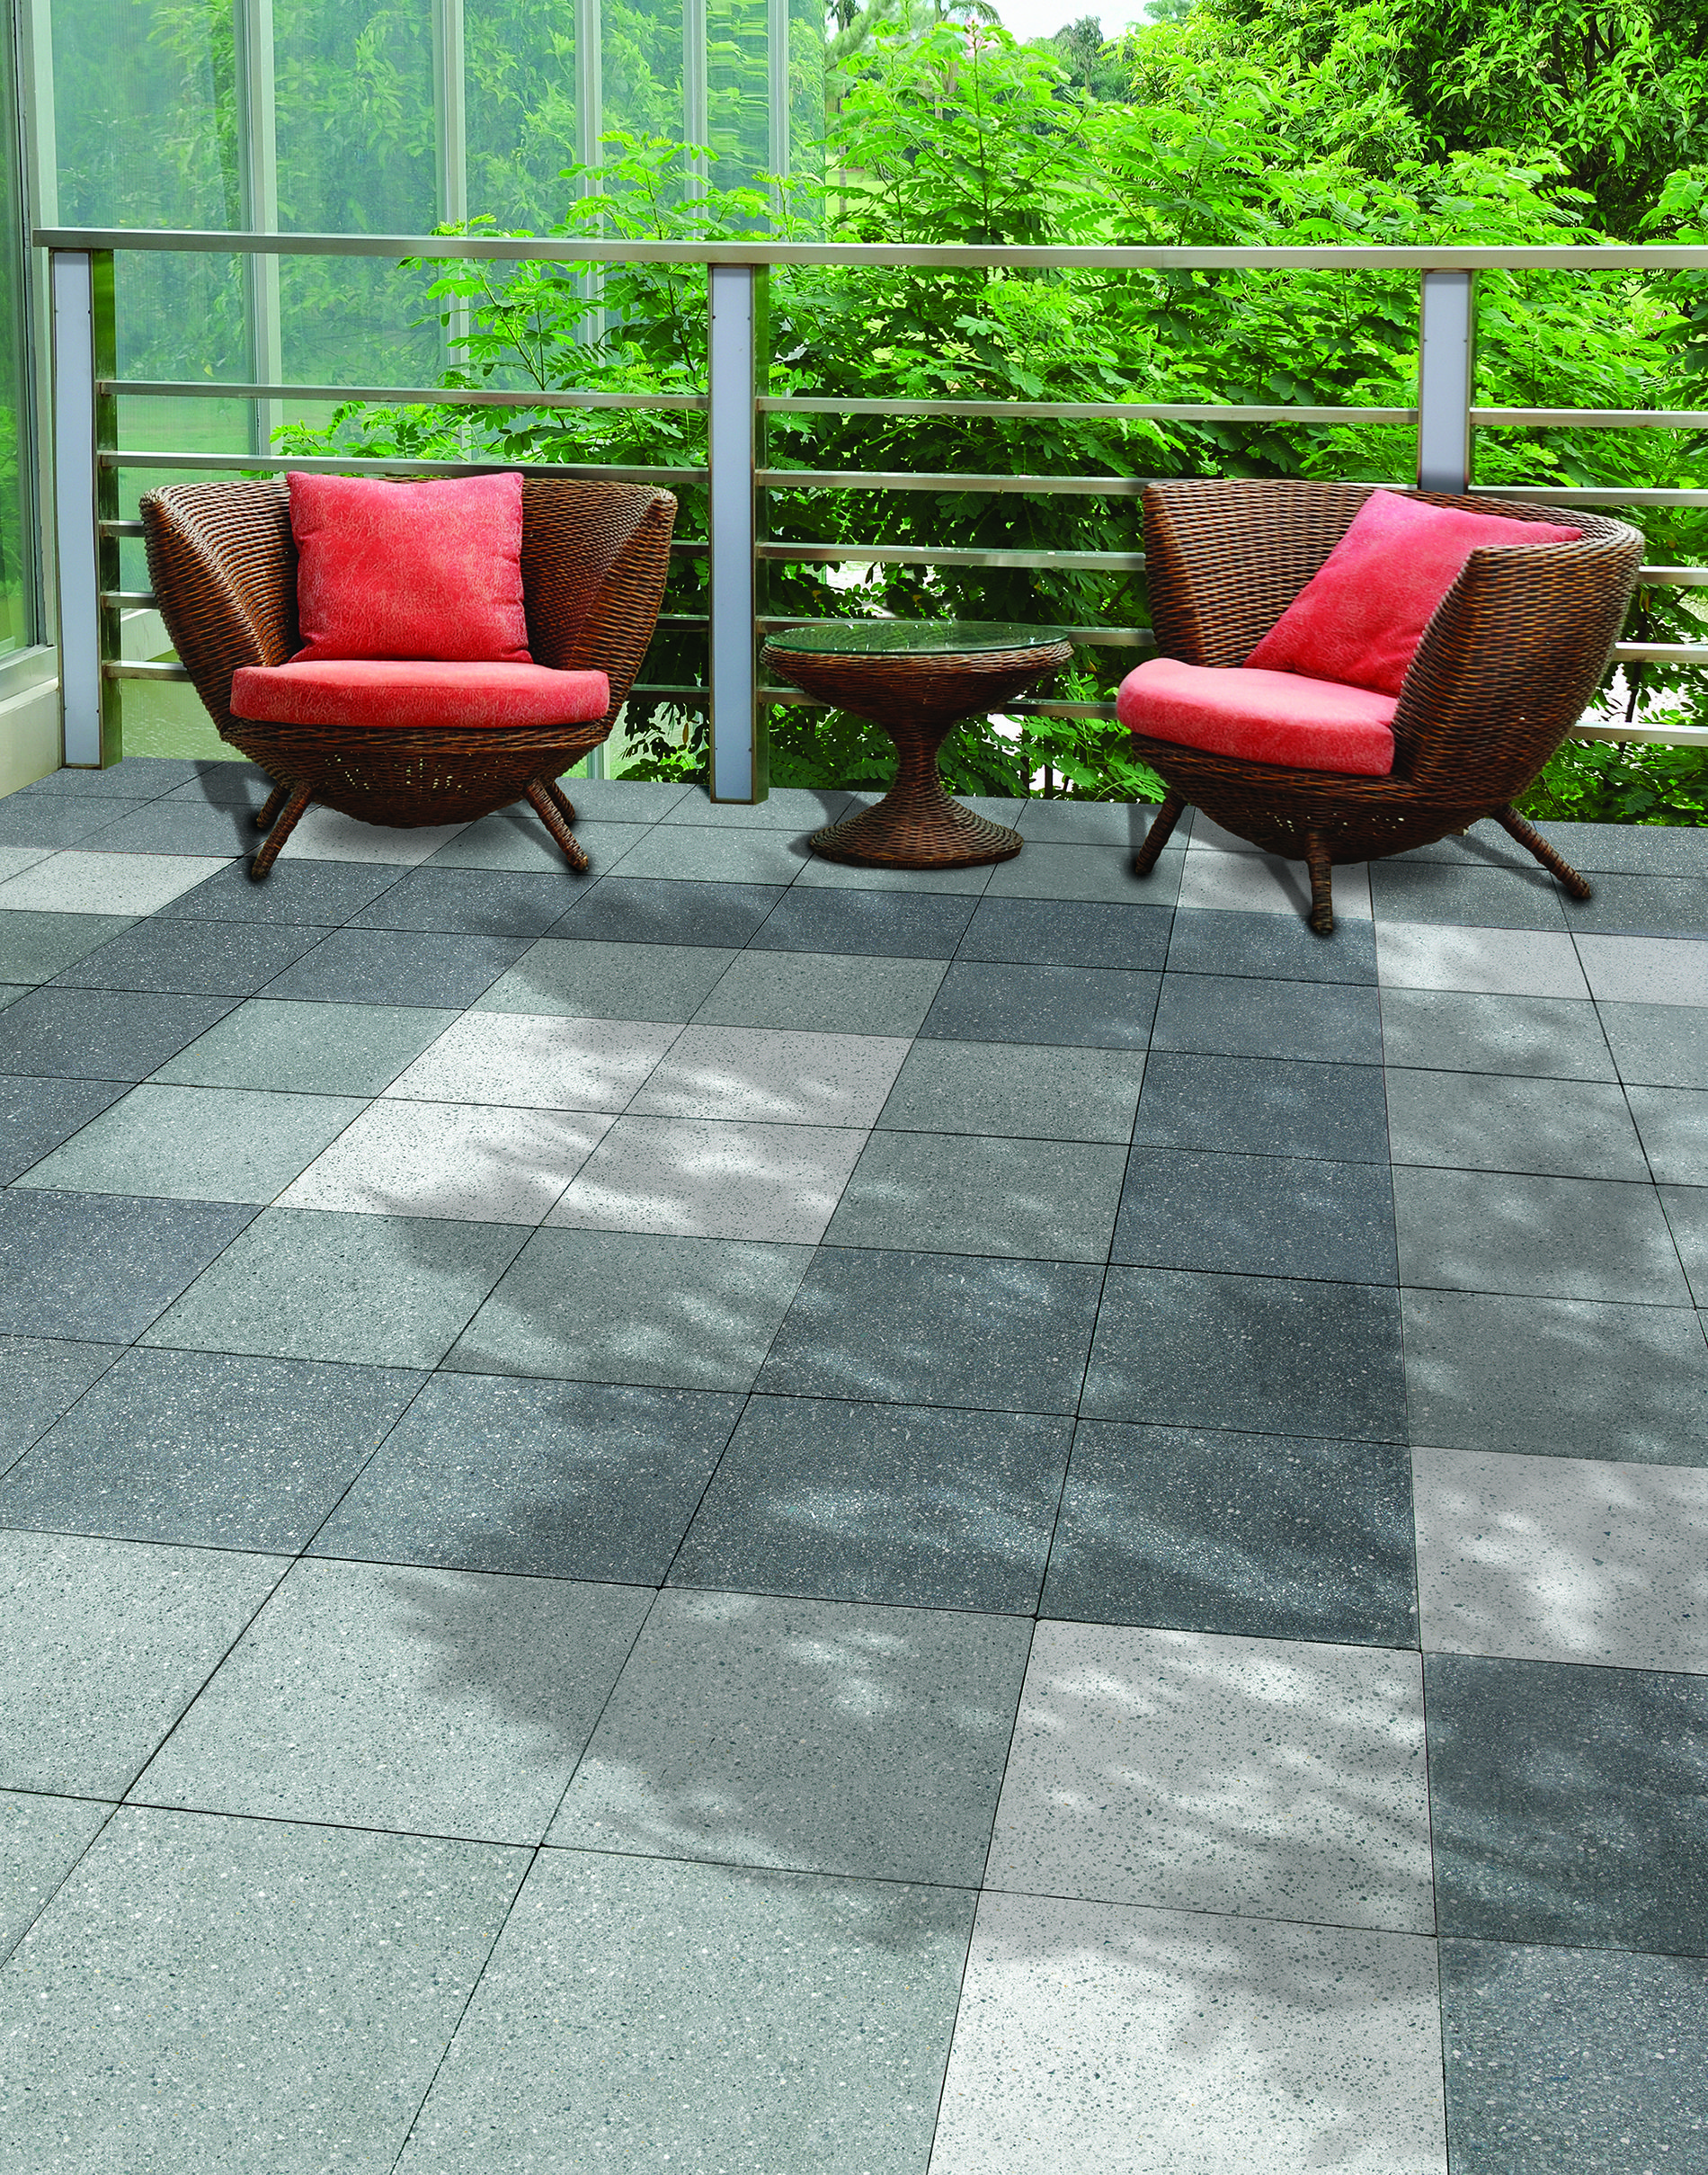 Make your patio shine!